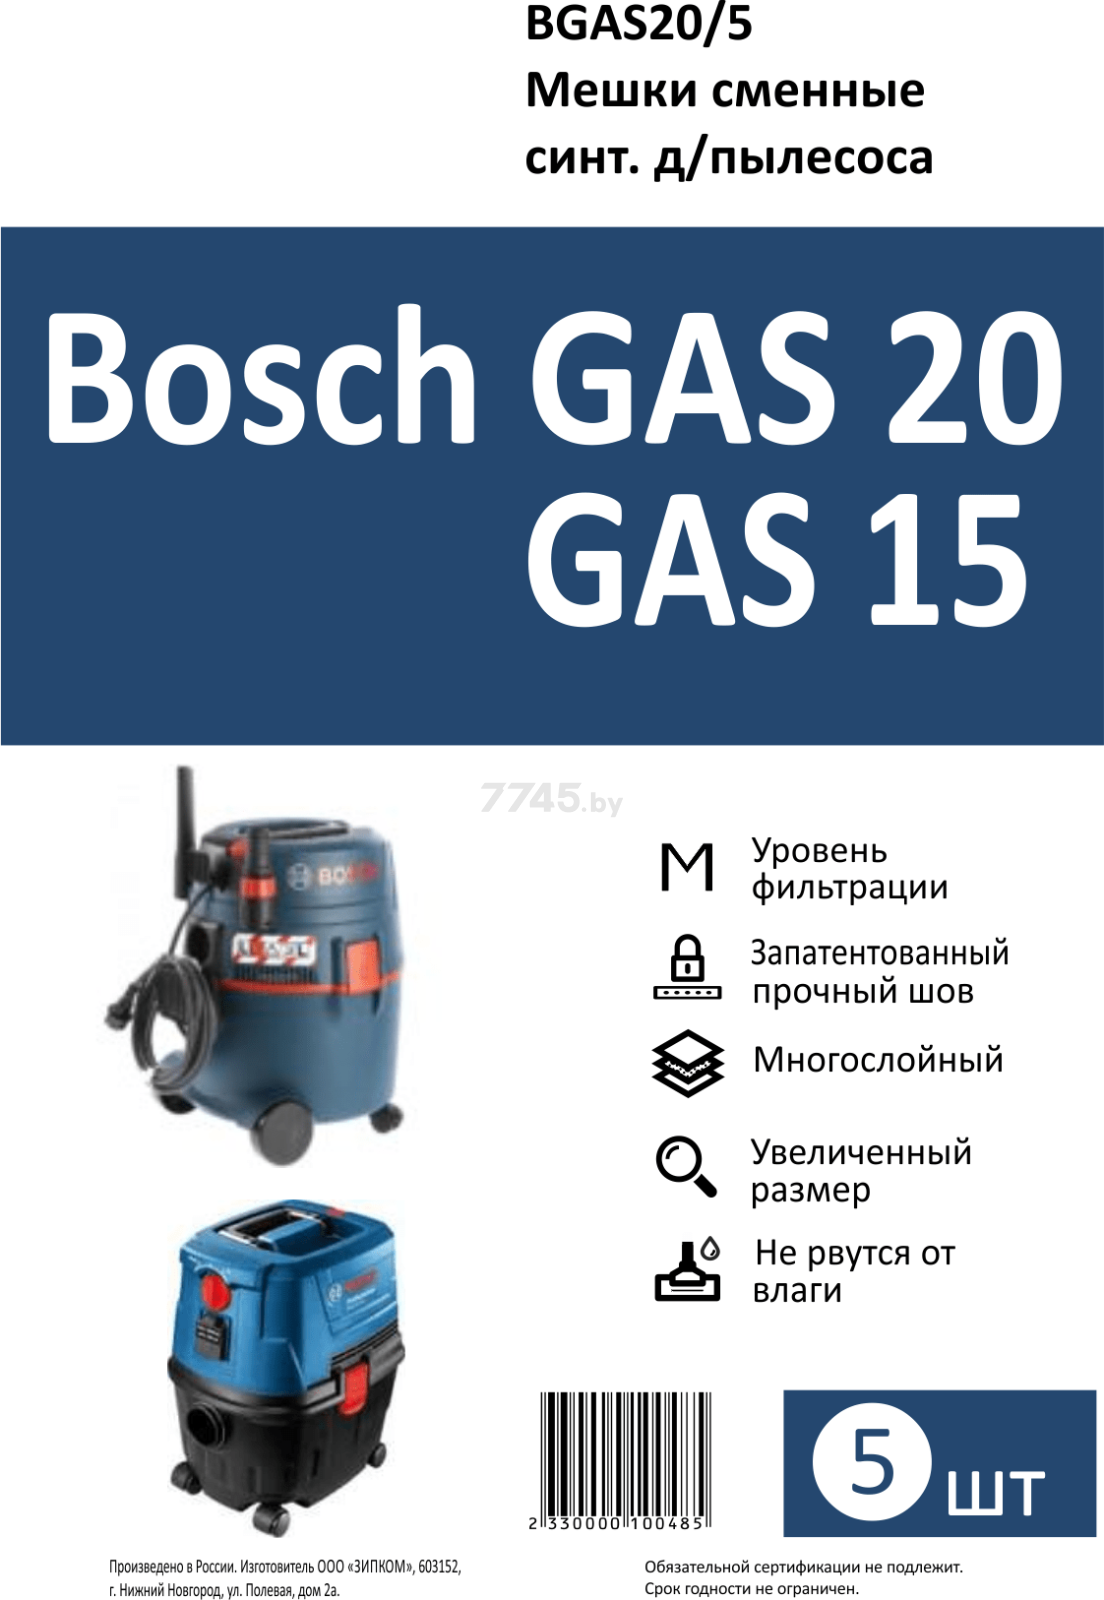 Мешок для пылесоса Bosch GAS20 DR.ELECTRO 5 штук (BGAS20/5) - Фото 4